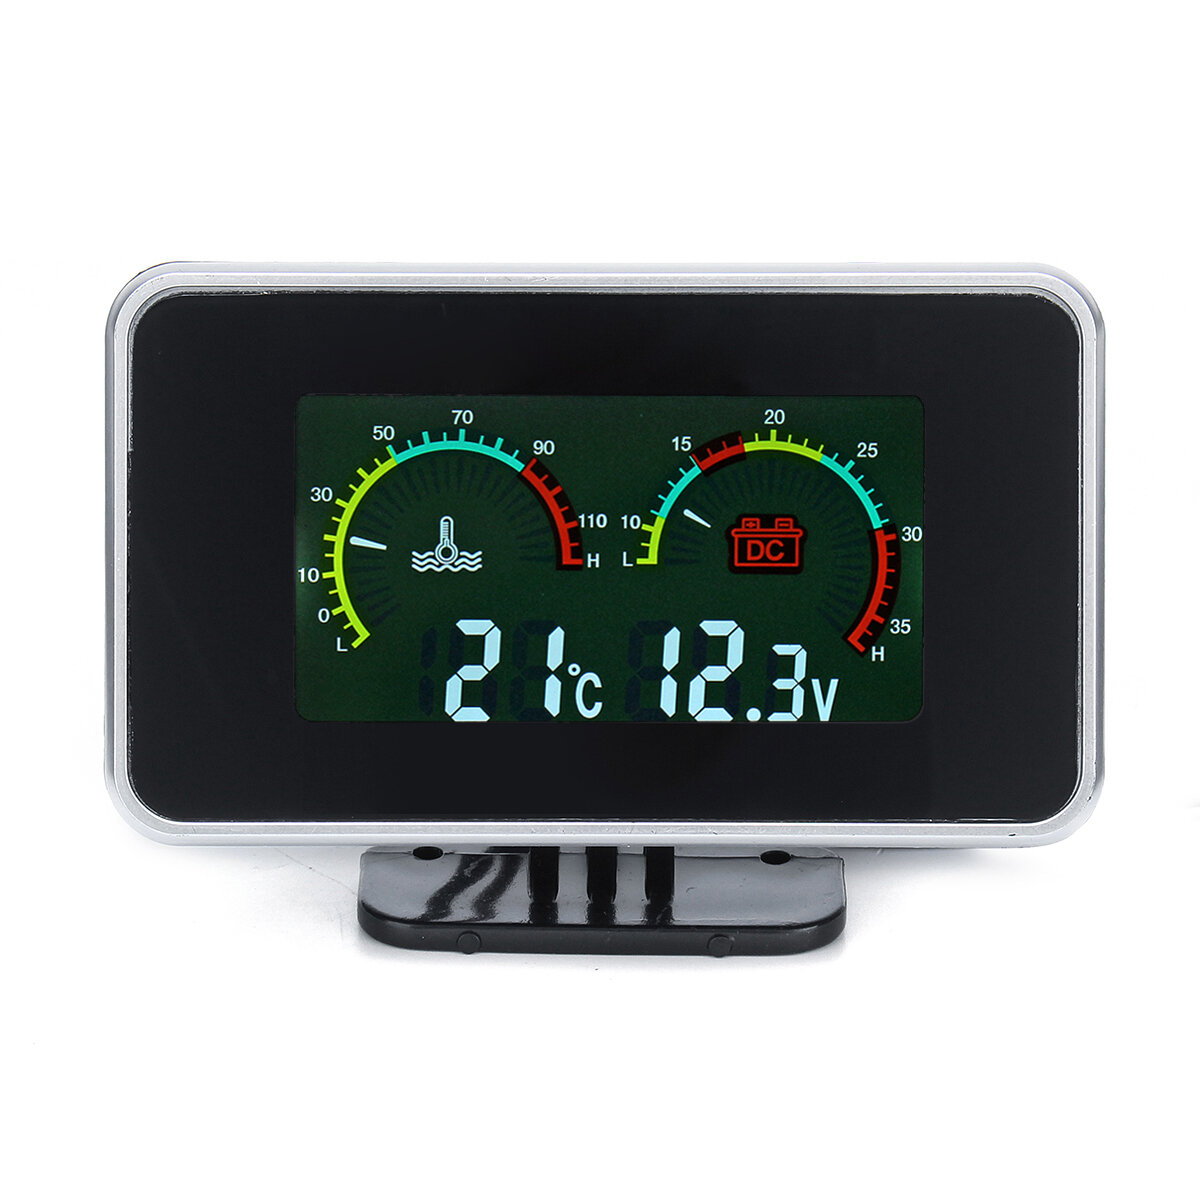 12 V-24 V 2 In1 LCD Auto Digitalanzeige Spannung Druck / Wassertemperatur Meter Mit Summer Alarm